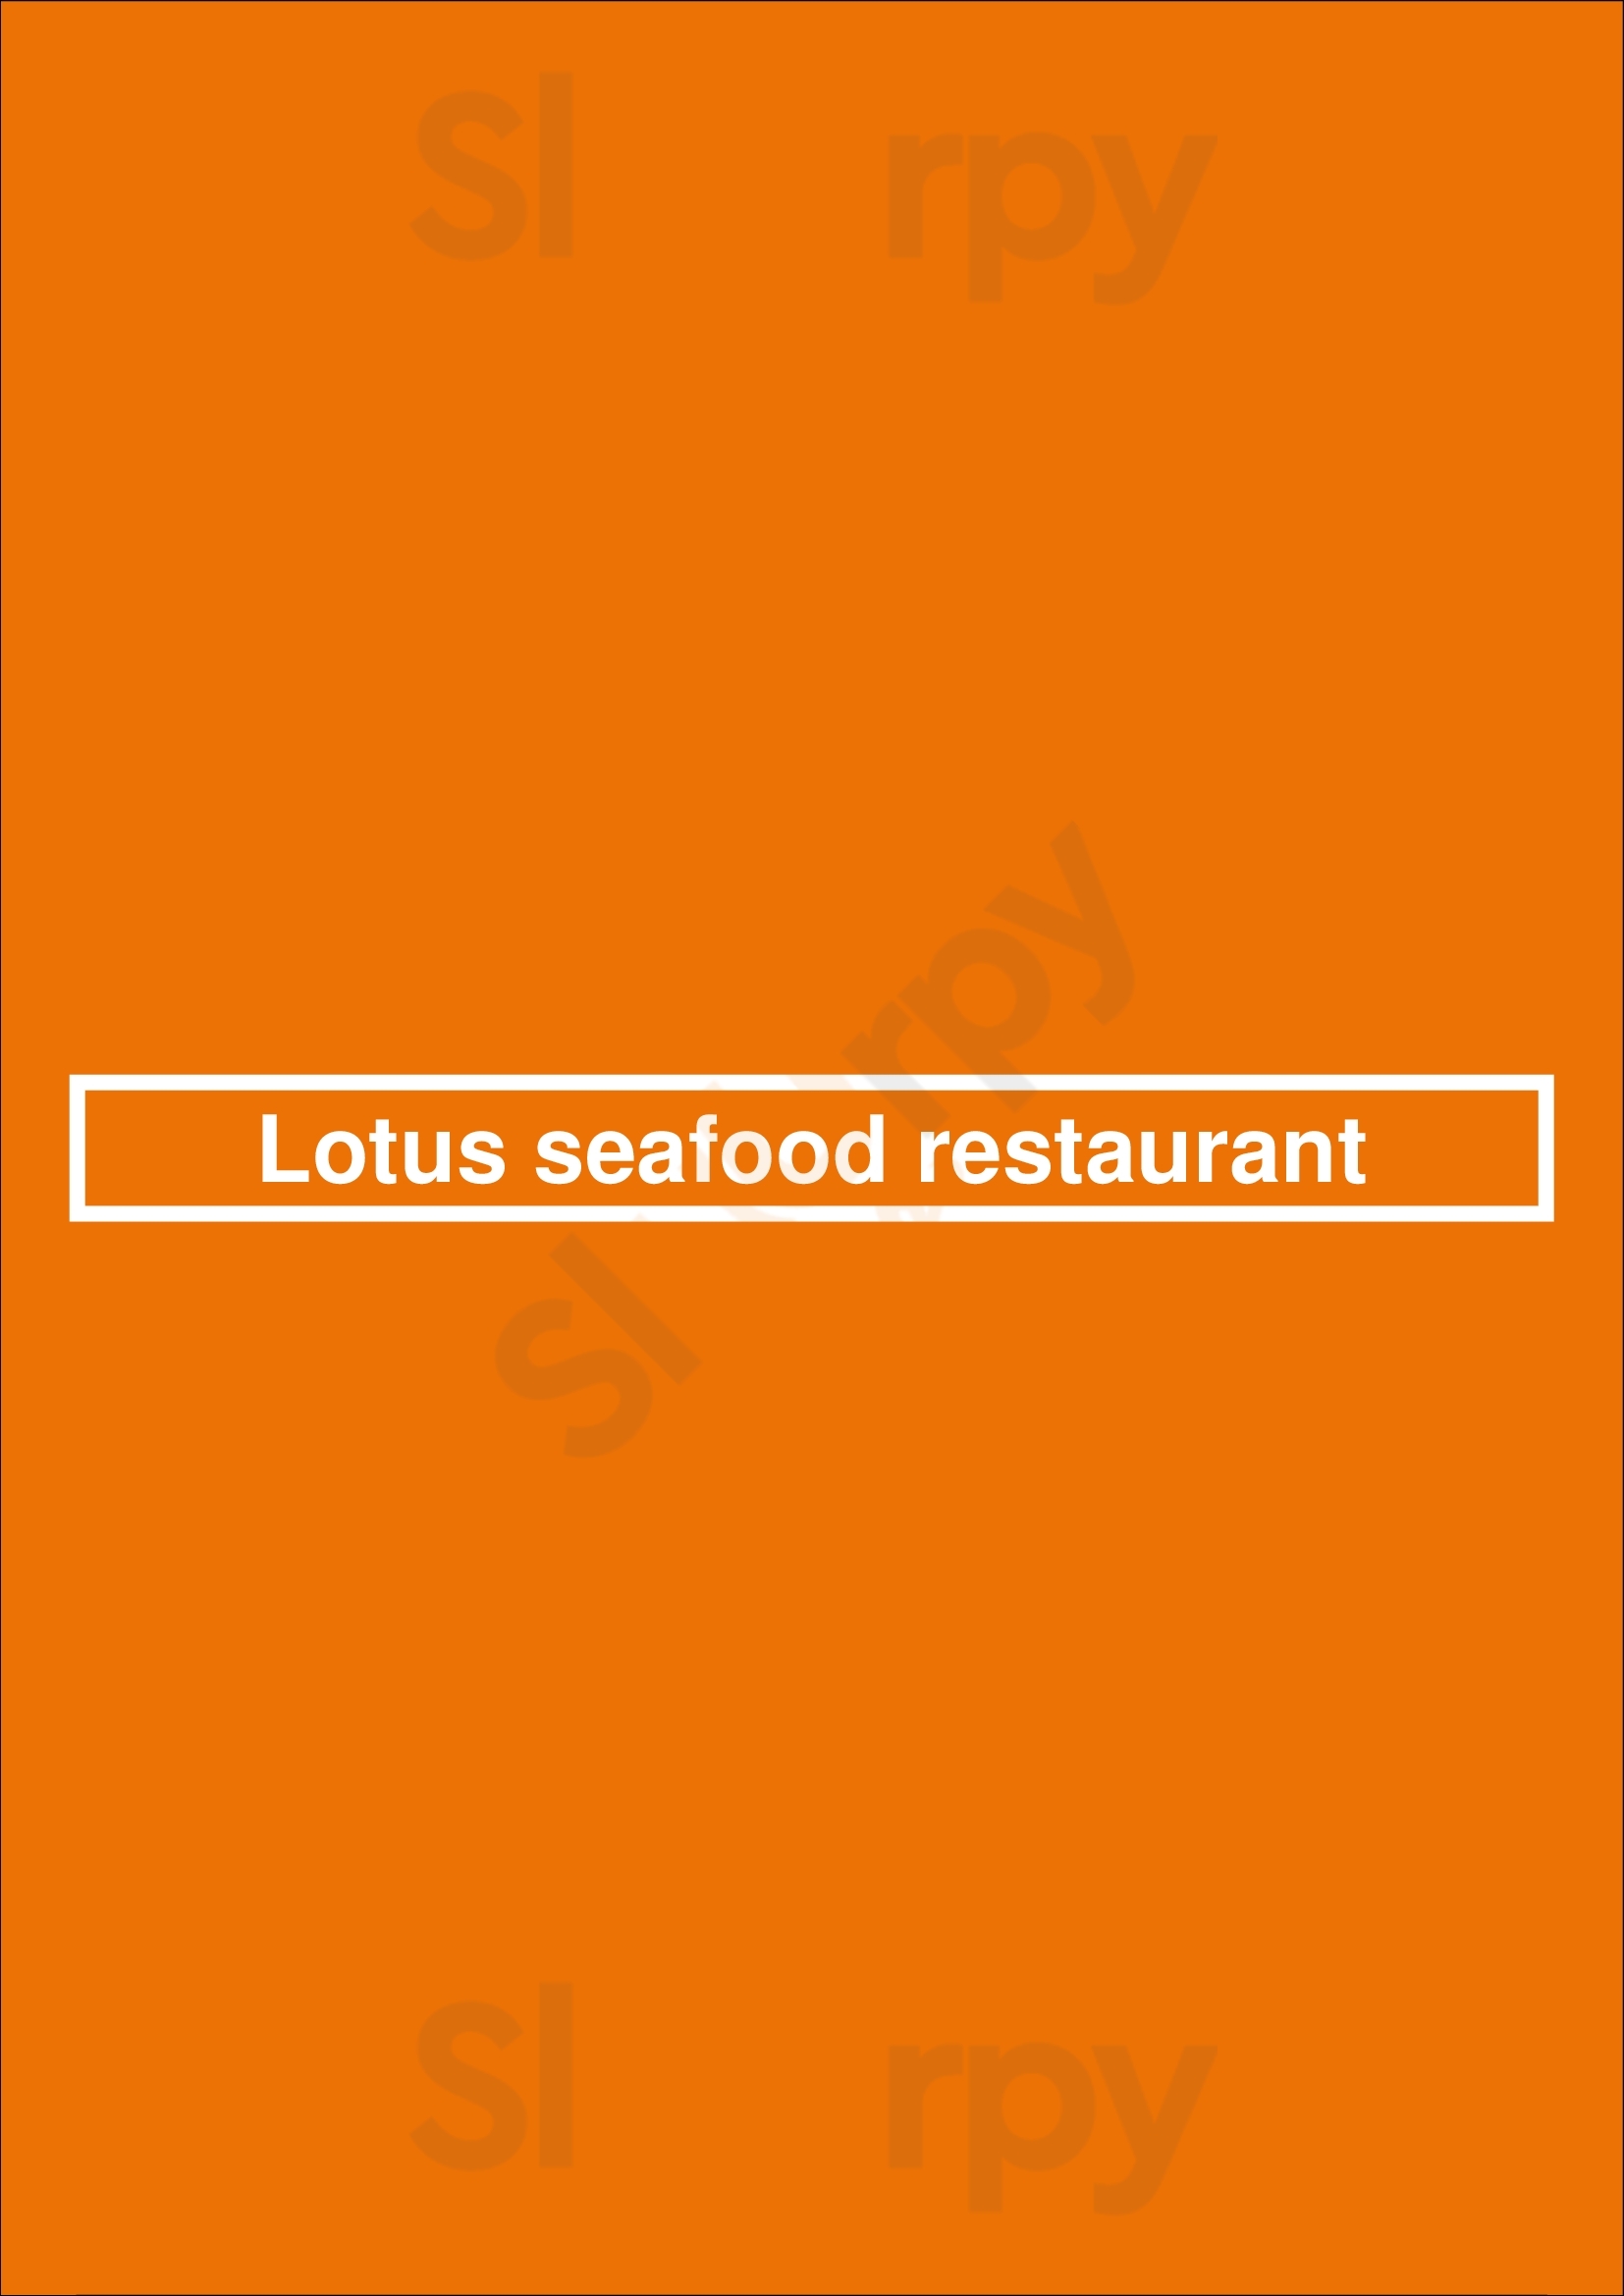 Lotus Seafood Restaurant Houston Menu - 1